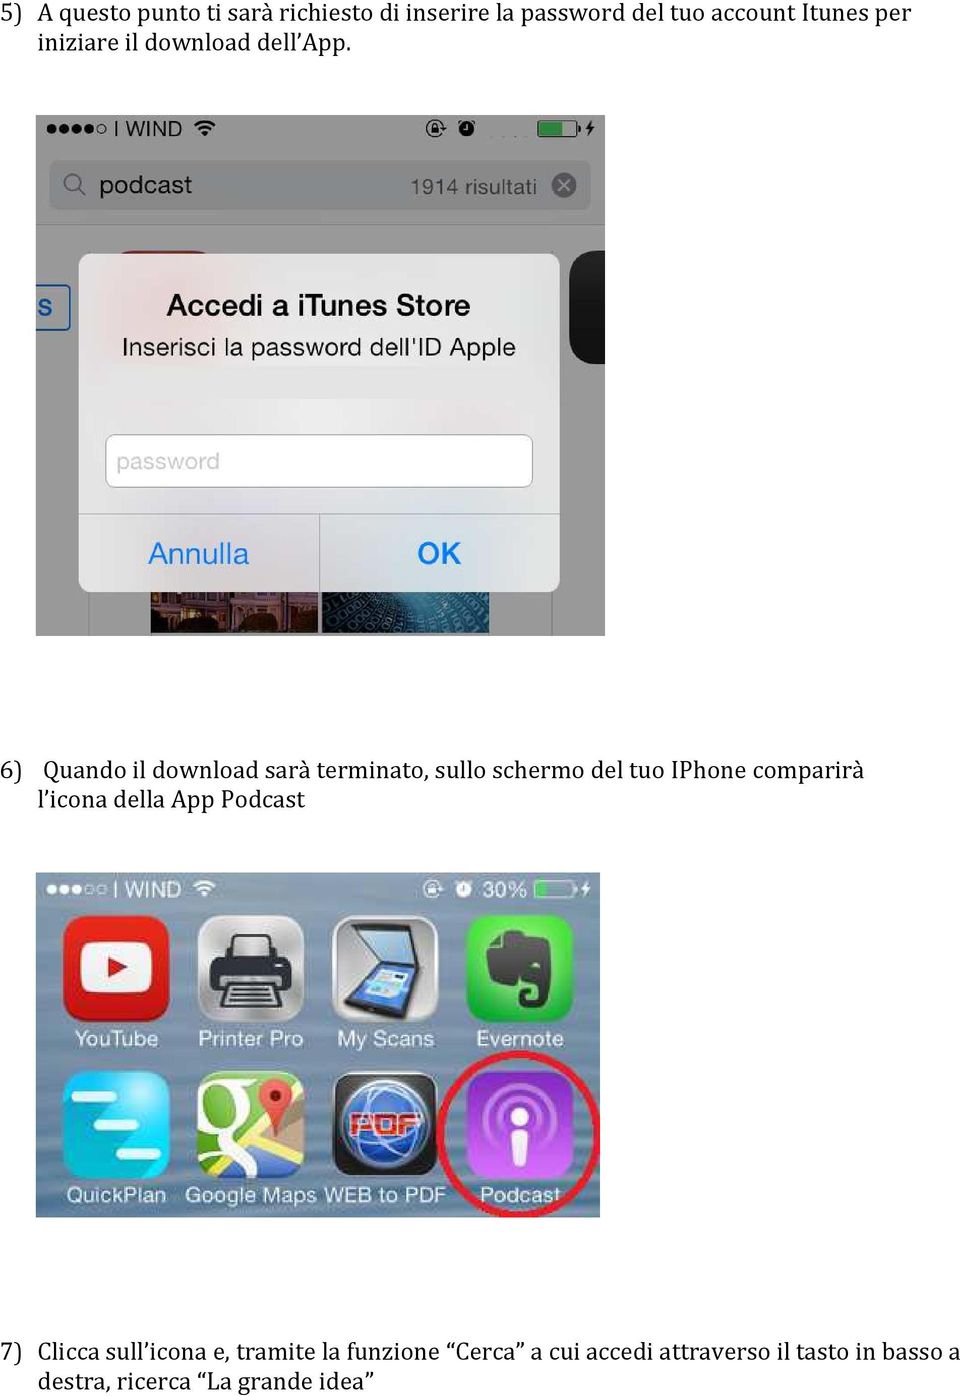 6) Quando il download sarà terminato, sullo schermo del tuo IPhone comparirà l icona